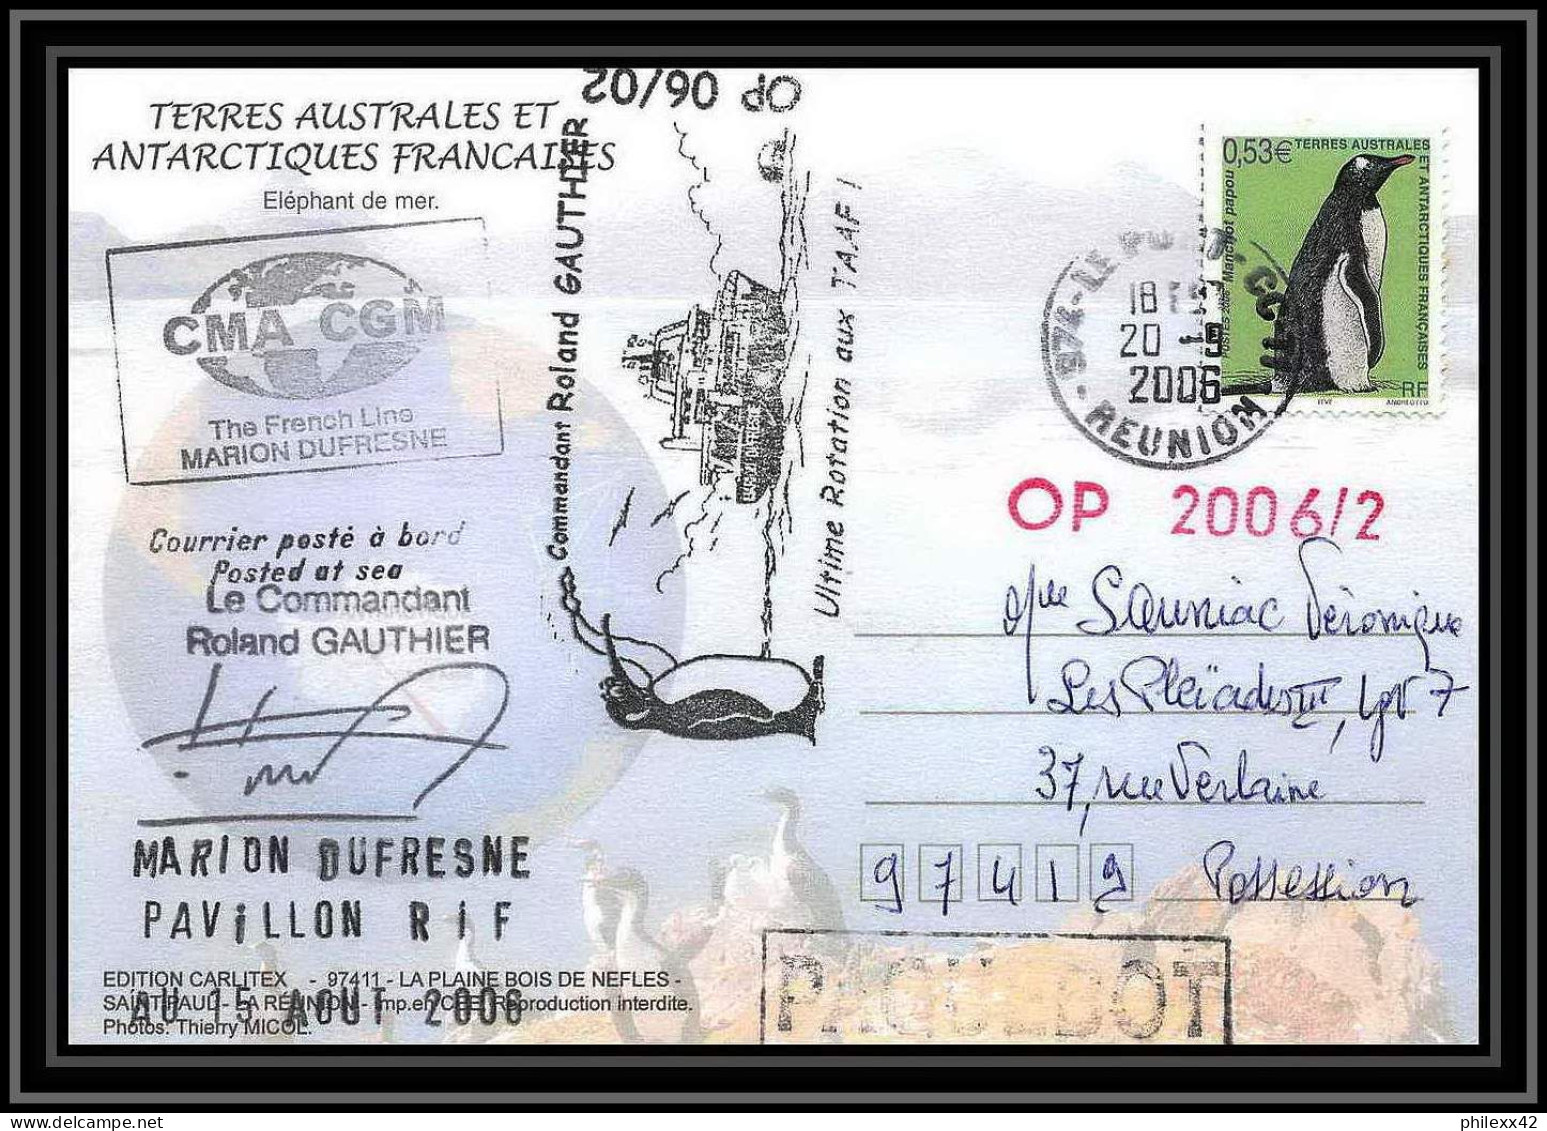 2639 ANTARCTIC Terres Australes (taaf)-carte Postale Dufresne 2 Signé Signed OP 2006/2 N°447 20/9/2006 - Cartas & Documentos